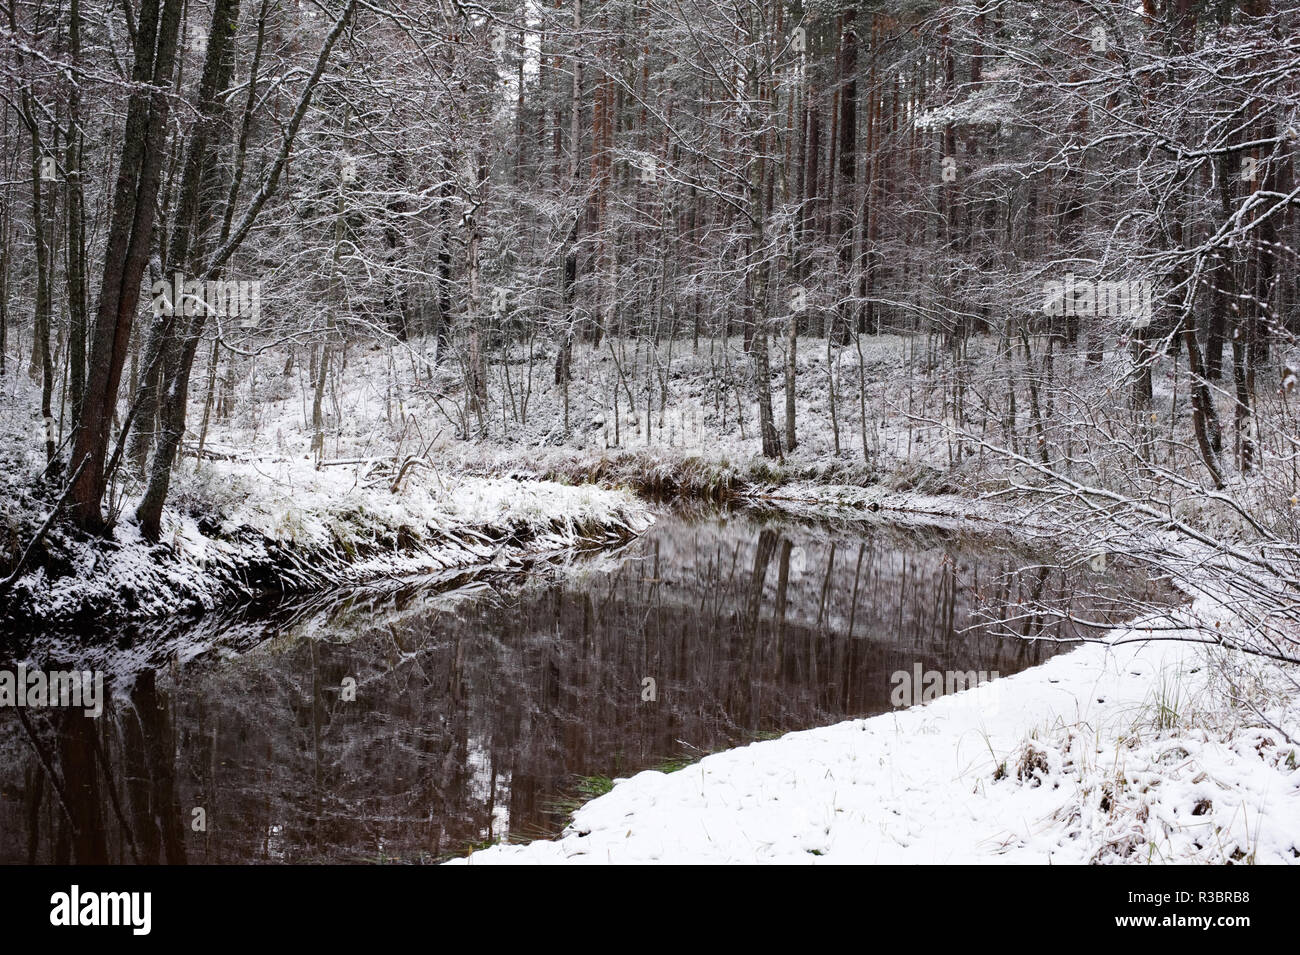 River serpente à travers la forêt d'hiver. Arbres se reflétant à partir de la surface de l'eau. Banque D'Images